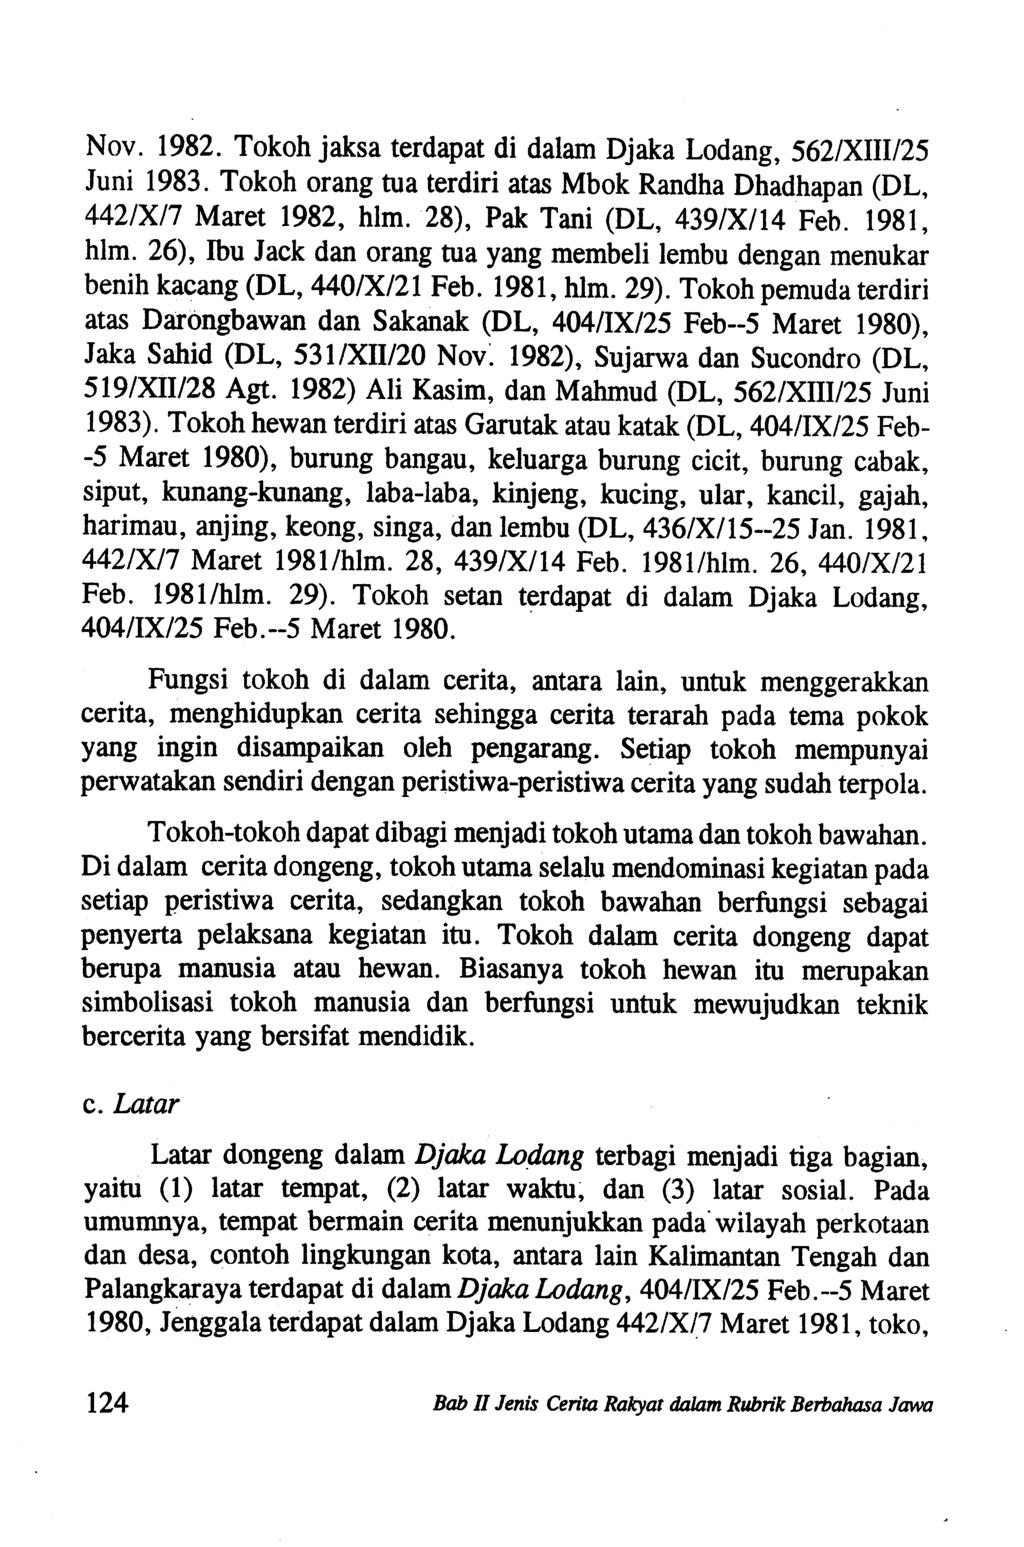 Nov. 1982. Tokoh jaksa terdapat di dalam Djaka Lodang, 562/XIII/25 Juni 1983. Tokoh orang tua terdiri atas Mbok Randha Dhadhapan (DL, 442/X/7 Maret 1982, him. 28), Pak Tani (DL, 439/X/14 Feb.